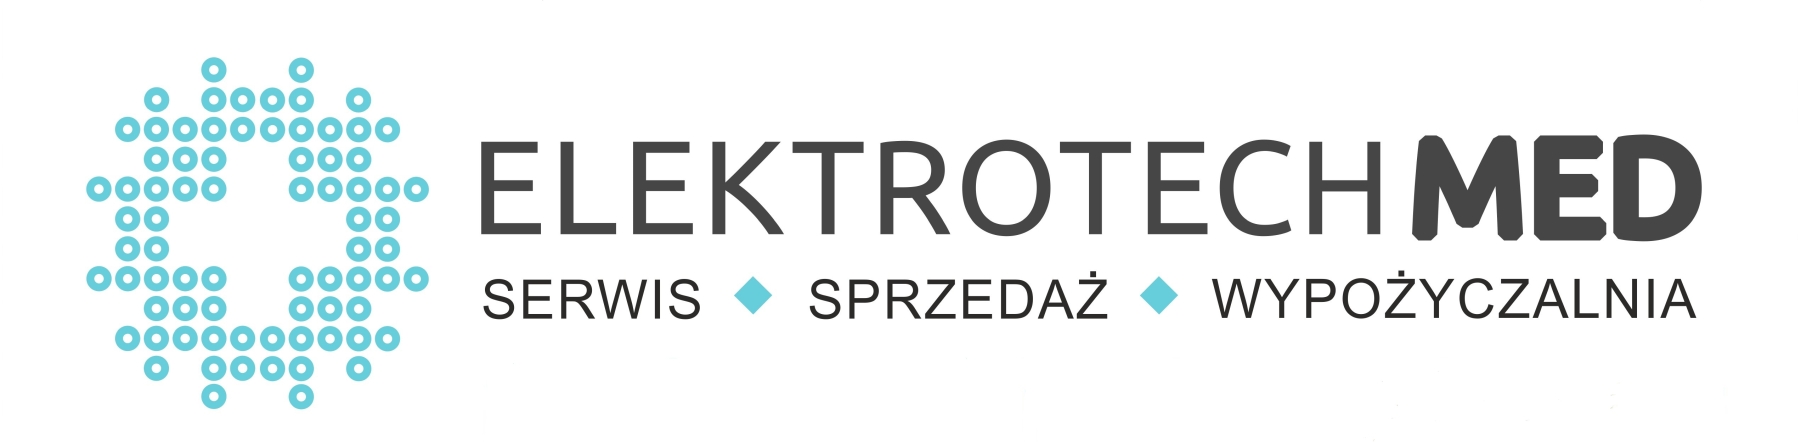 Logo ElektroTechmeD, serwis koncentrator autoklaw